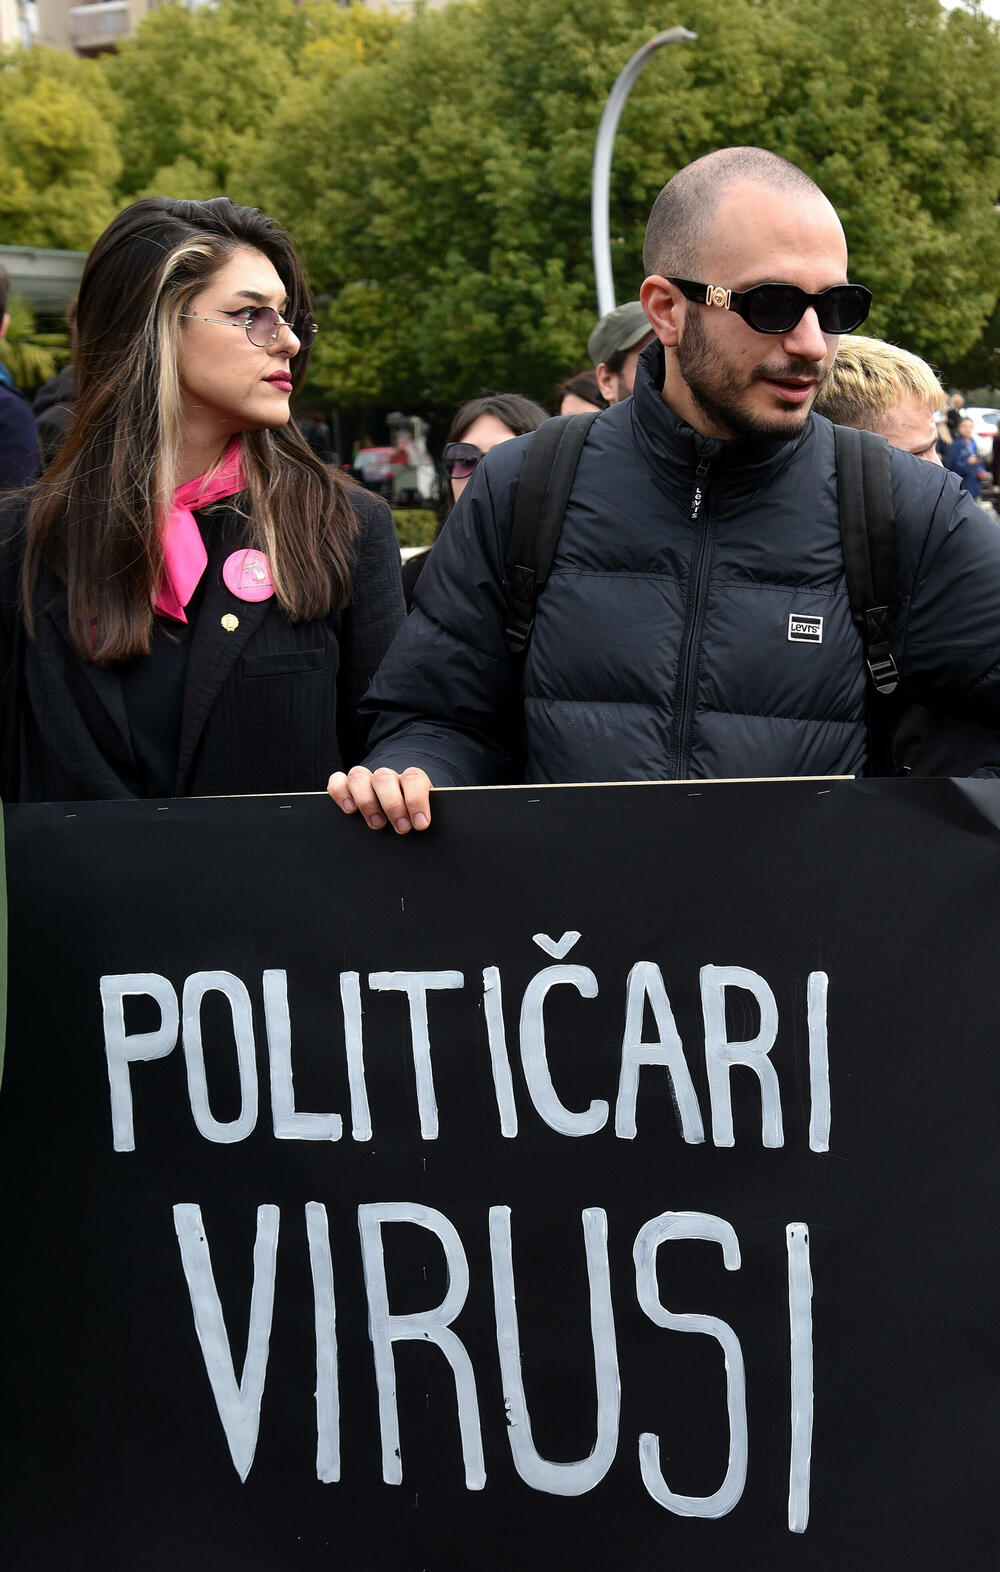 <p>U organizaciji Centra za ženska prava u Podgorici je danas održan osmi osmomartovski marš pod sloganom "Otpor sili i nepravdi”. Pogledajte šta je zabilježio naš fotograf. </p>